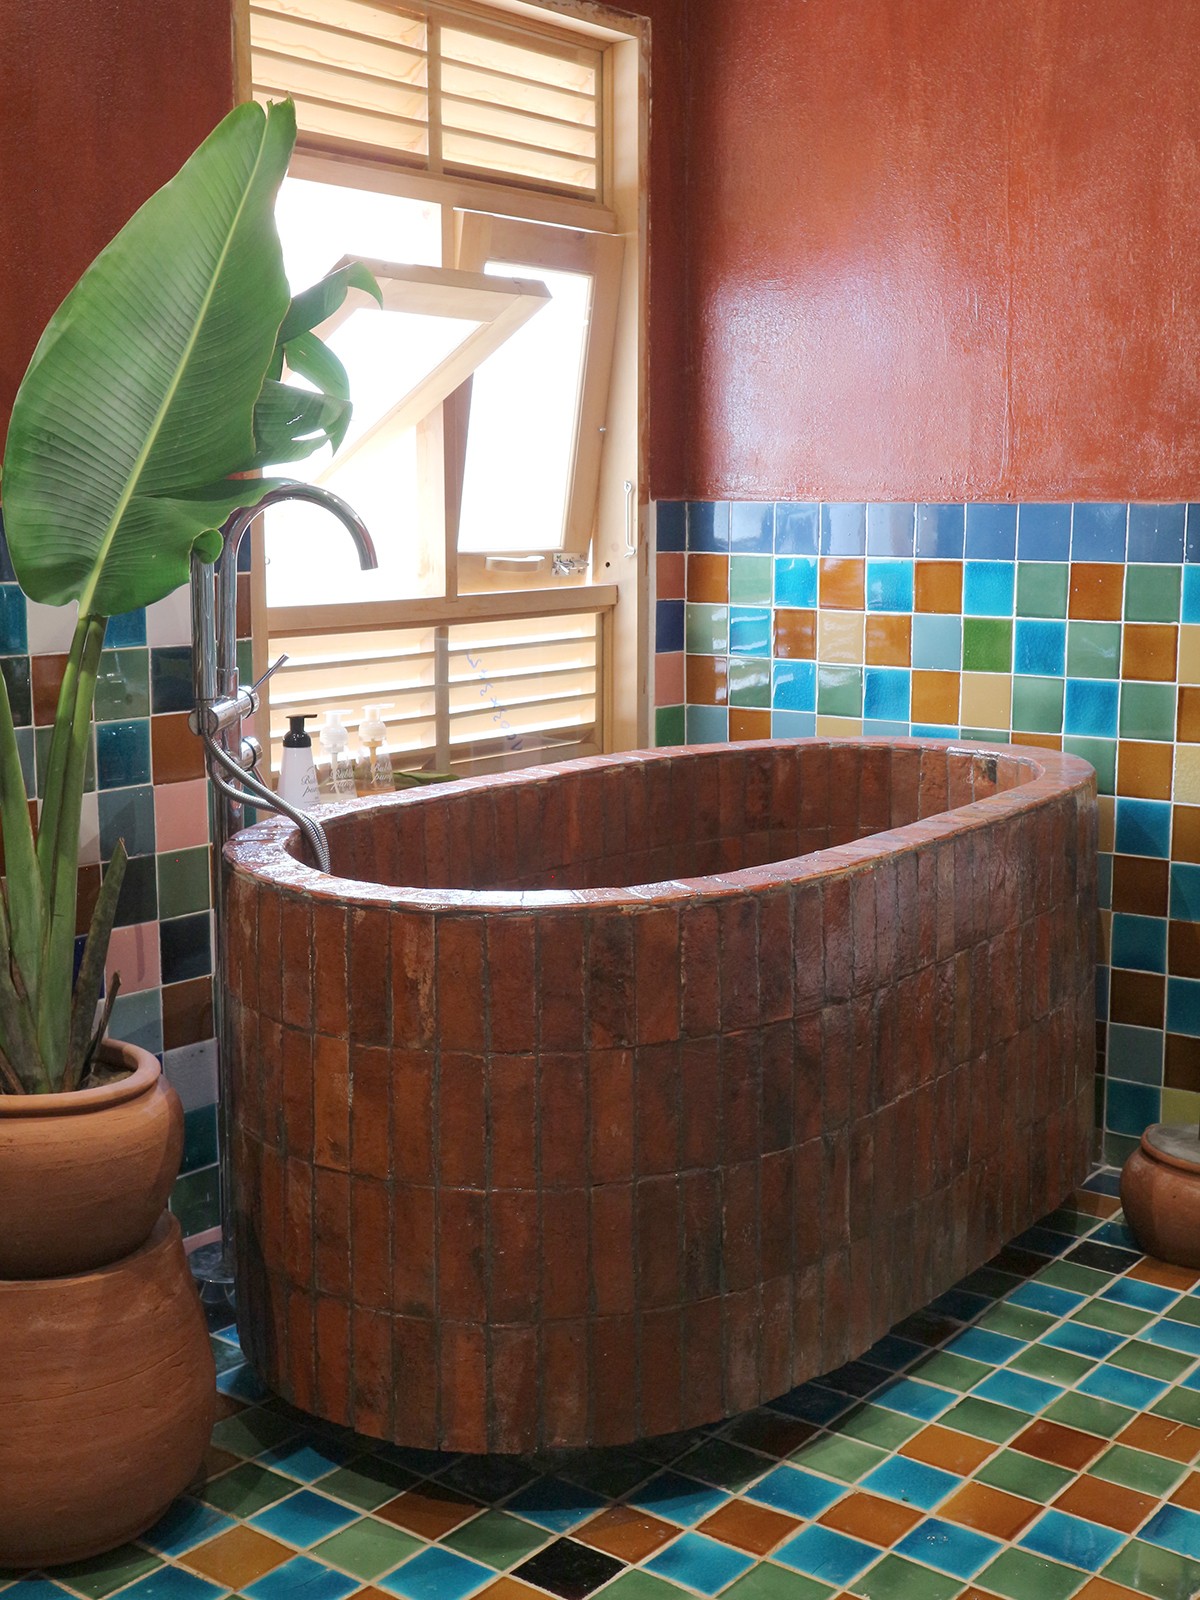 
Bồn tắm xây bằng gạch ngói cổ hòa với không gian sắc màu tạo nên phòng tắm độc đáo
